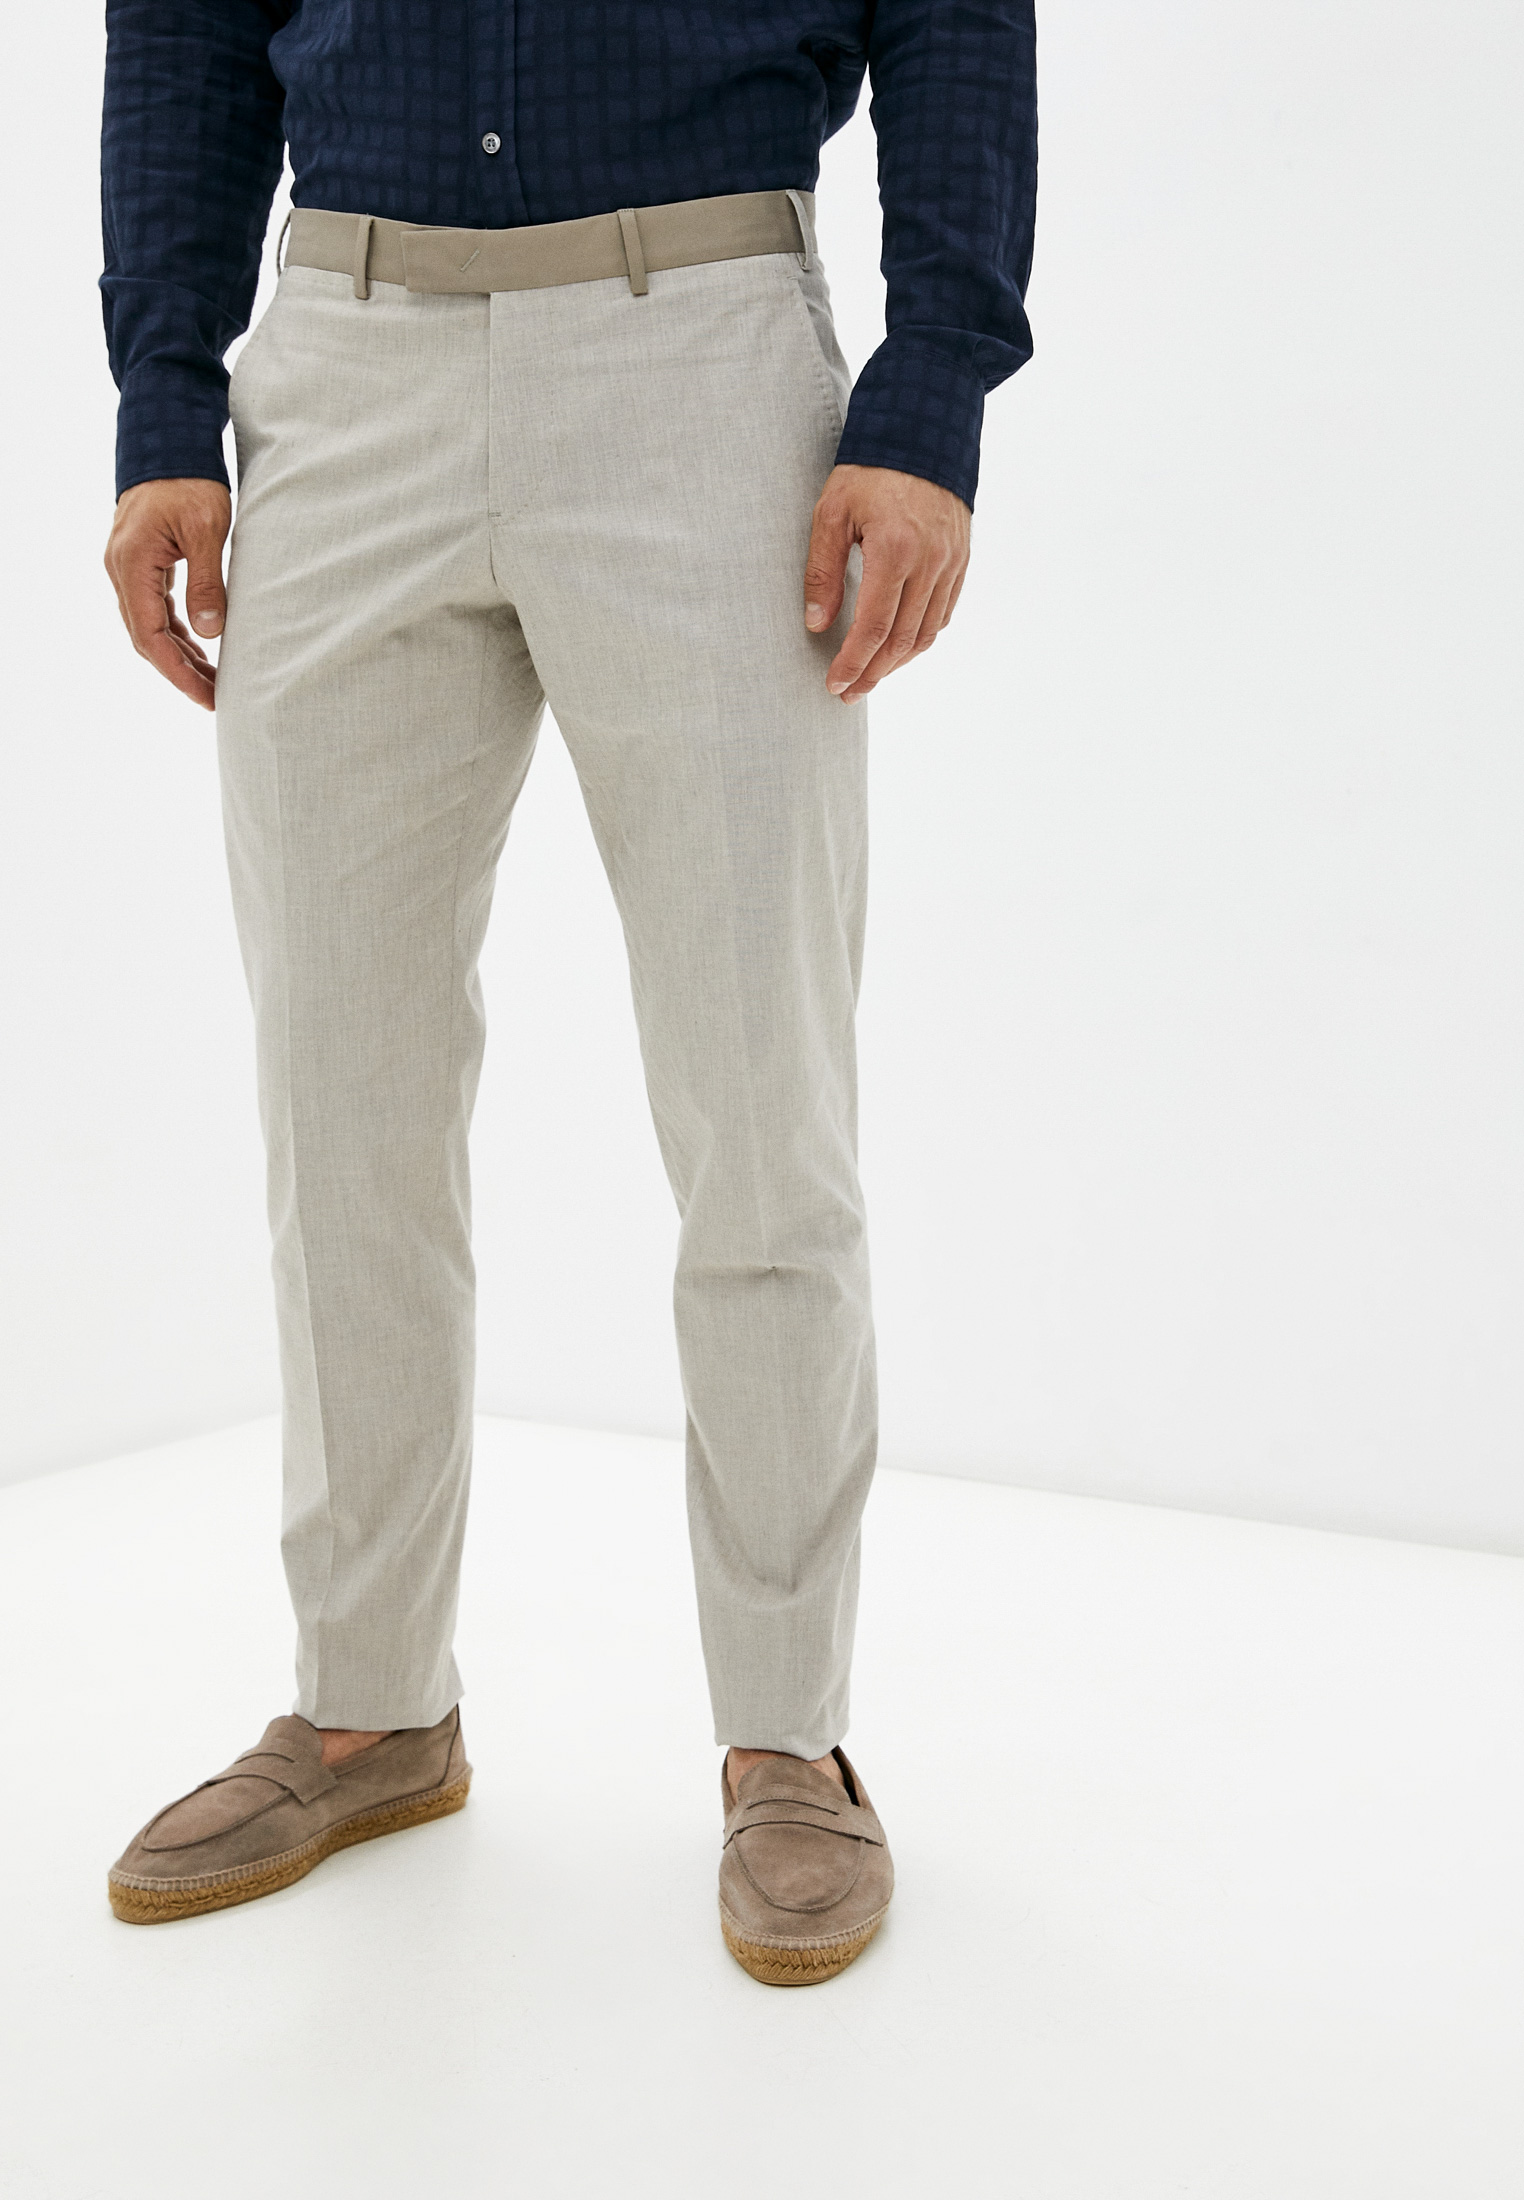 Мужские повседневные брюки Emporio Armani (Эмпорио Армани) W1P0N0 W1516: изображение 1